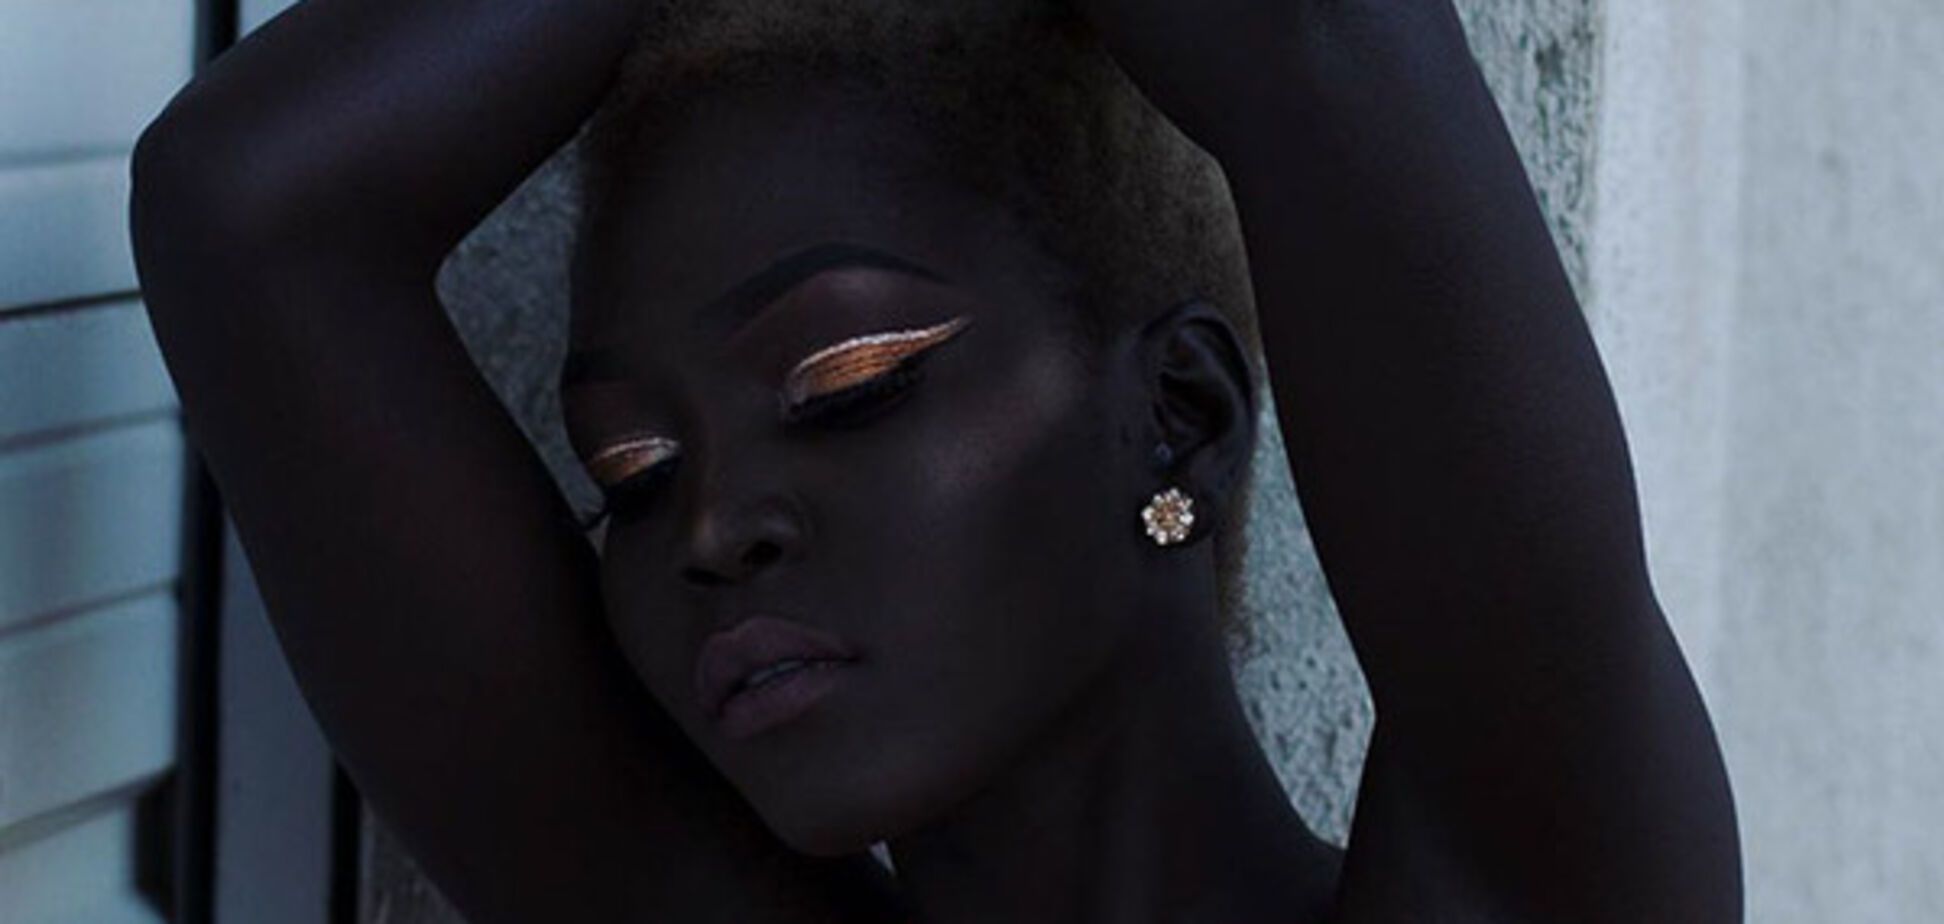 Королева темряви: інтернет підкорює фотомодель із неймовірним кольором шкіри 